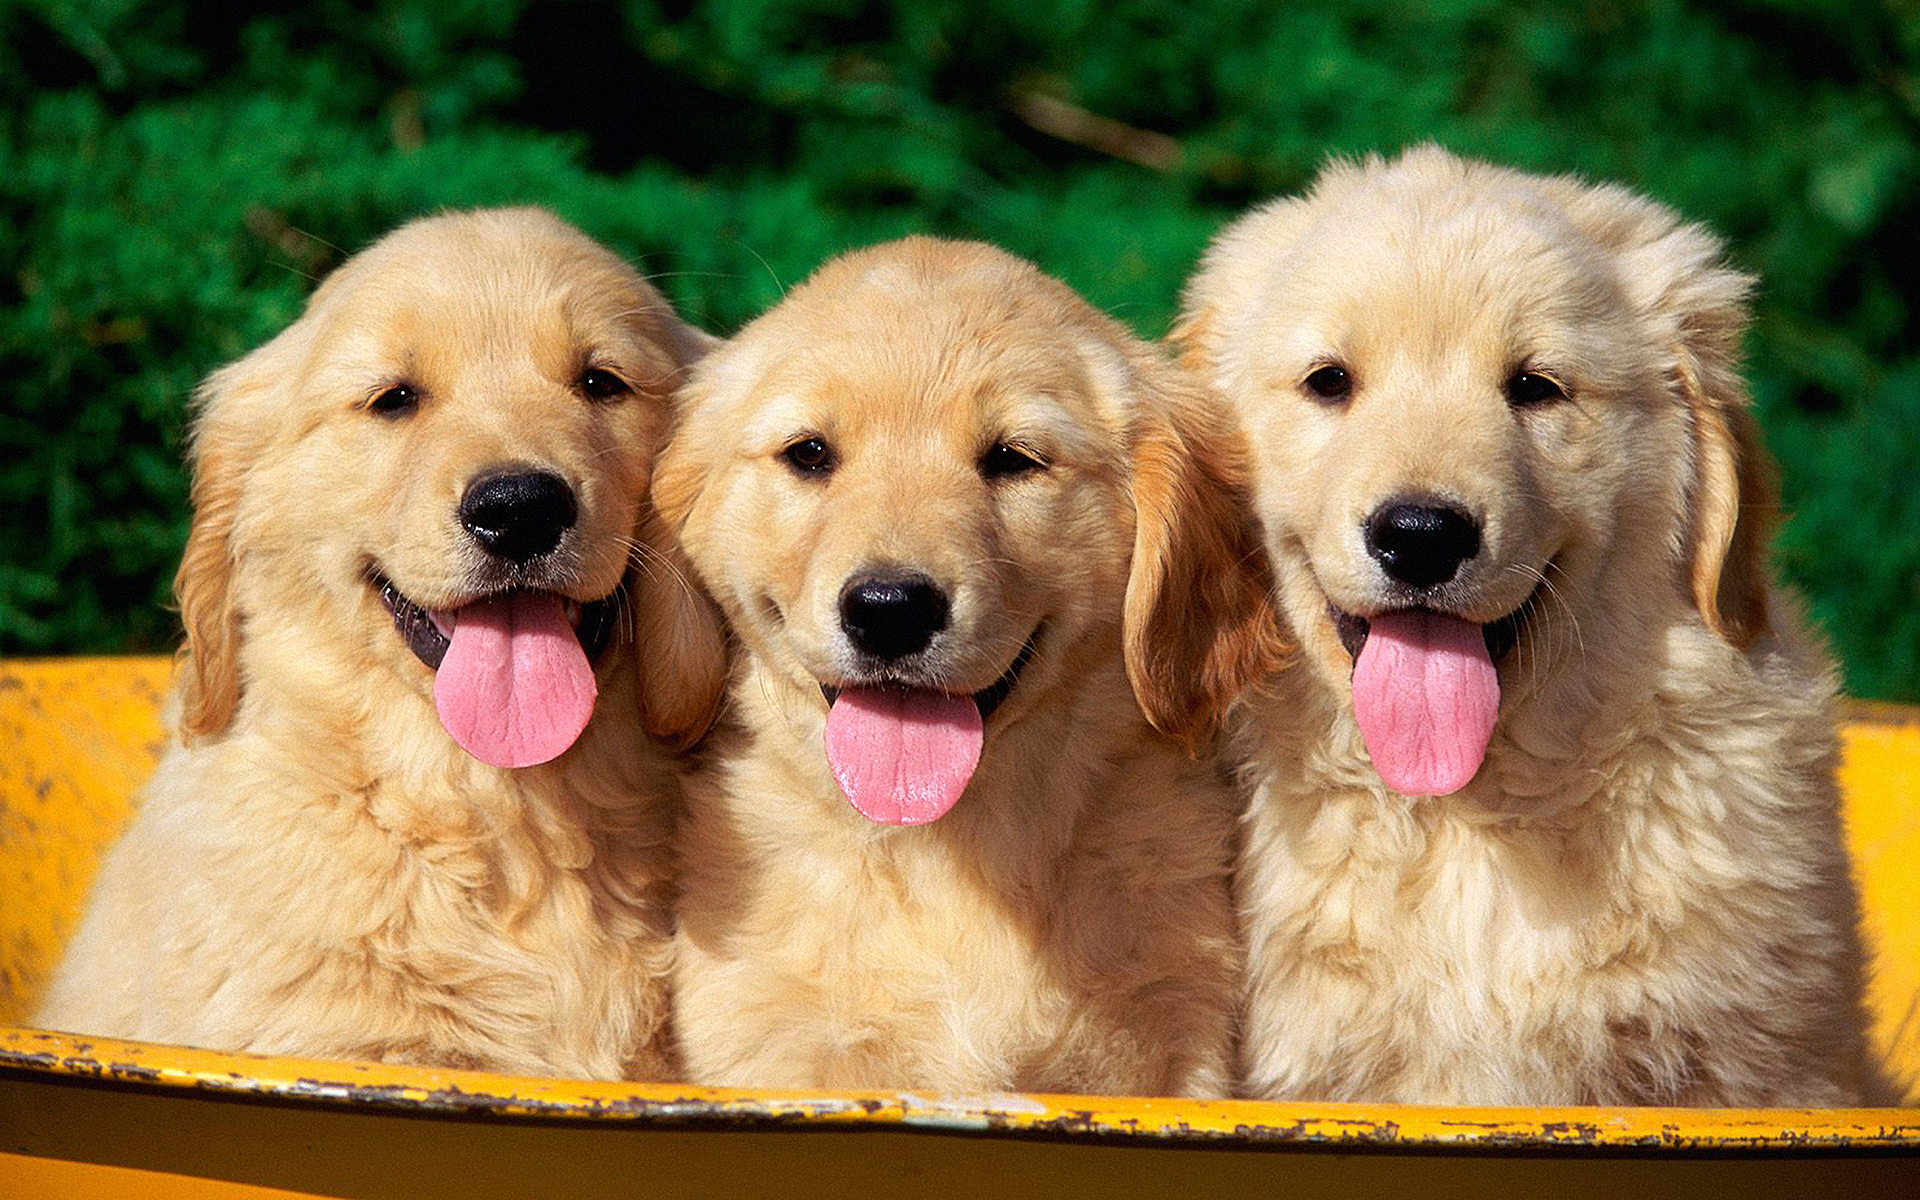 Golden Retriever puppies in the basket wallpaper